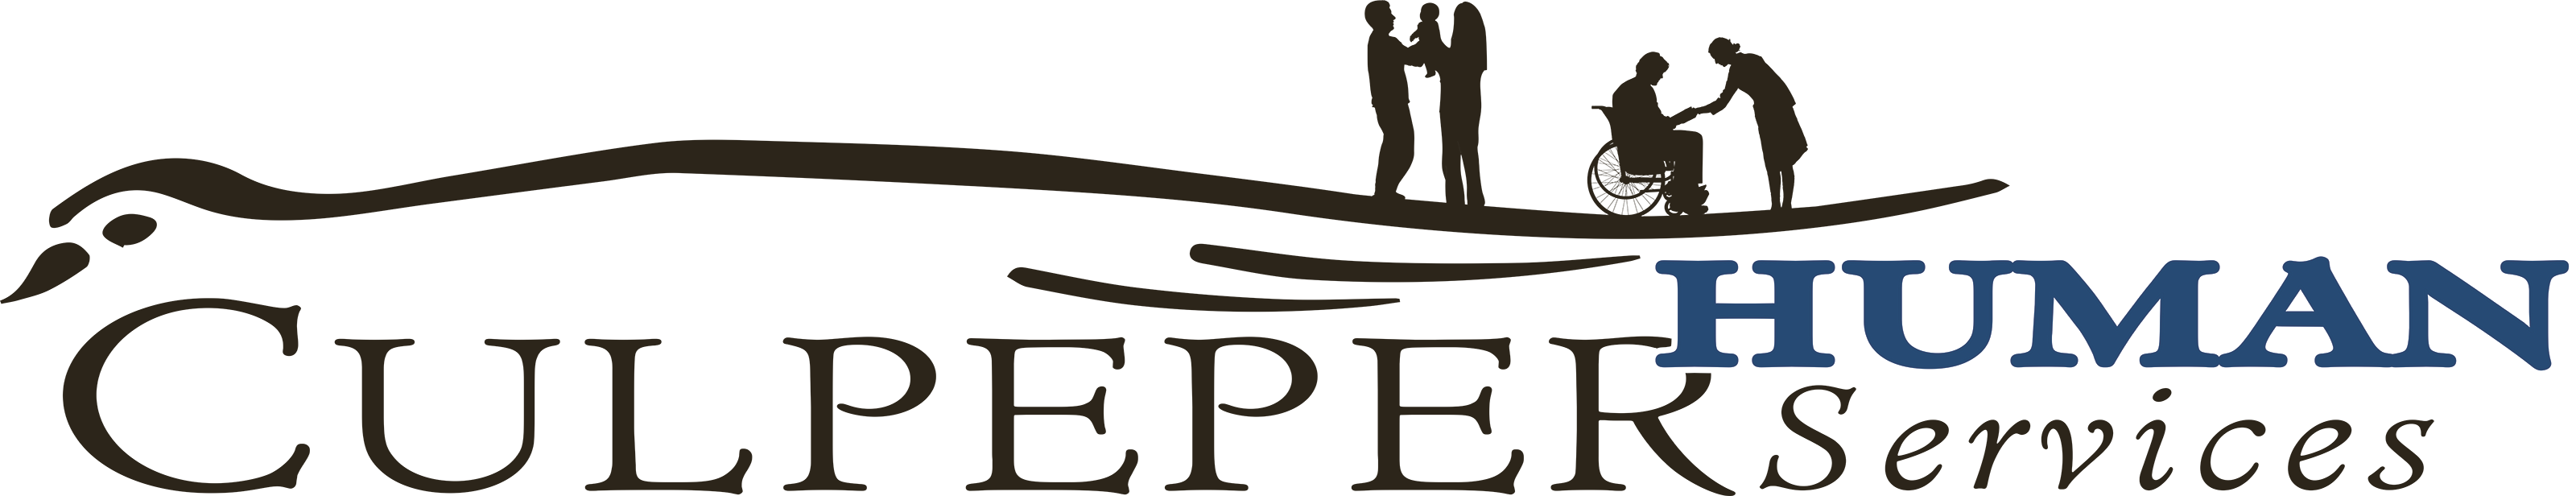 Culpeper Human Services